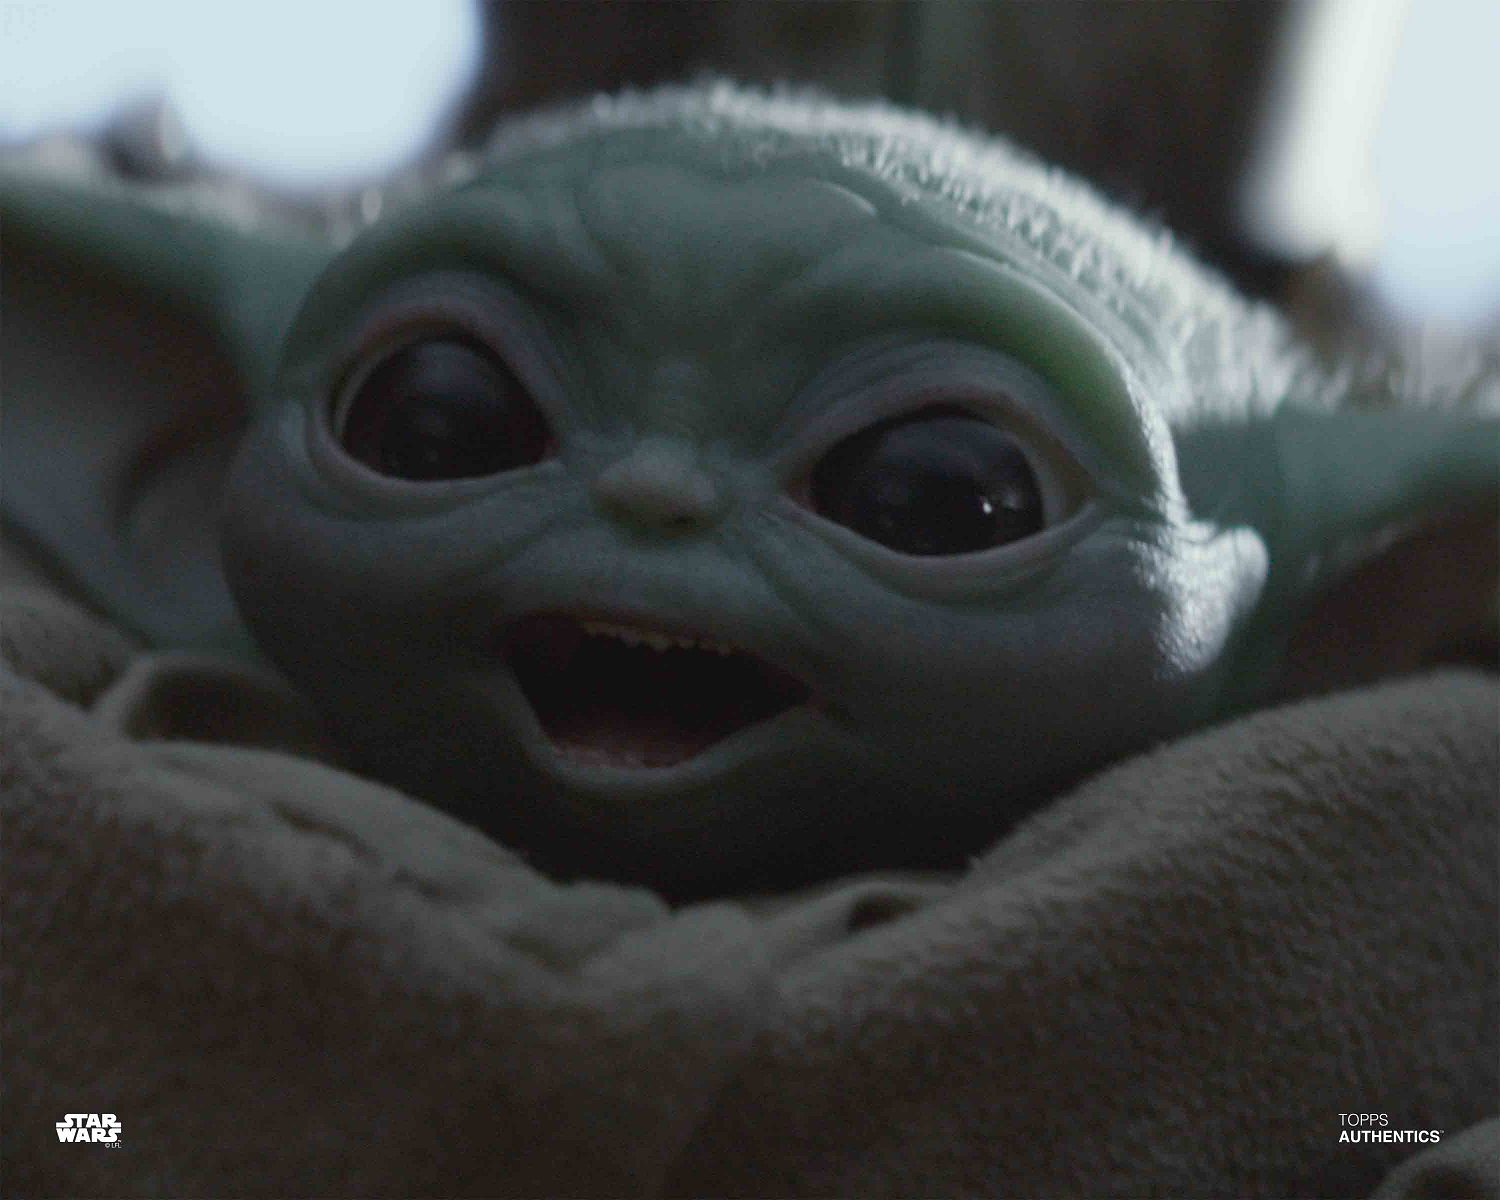 Star Wars The Mandalorian Baby Yoda